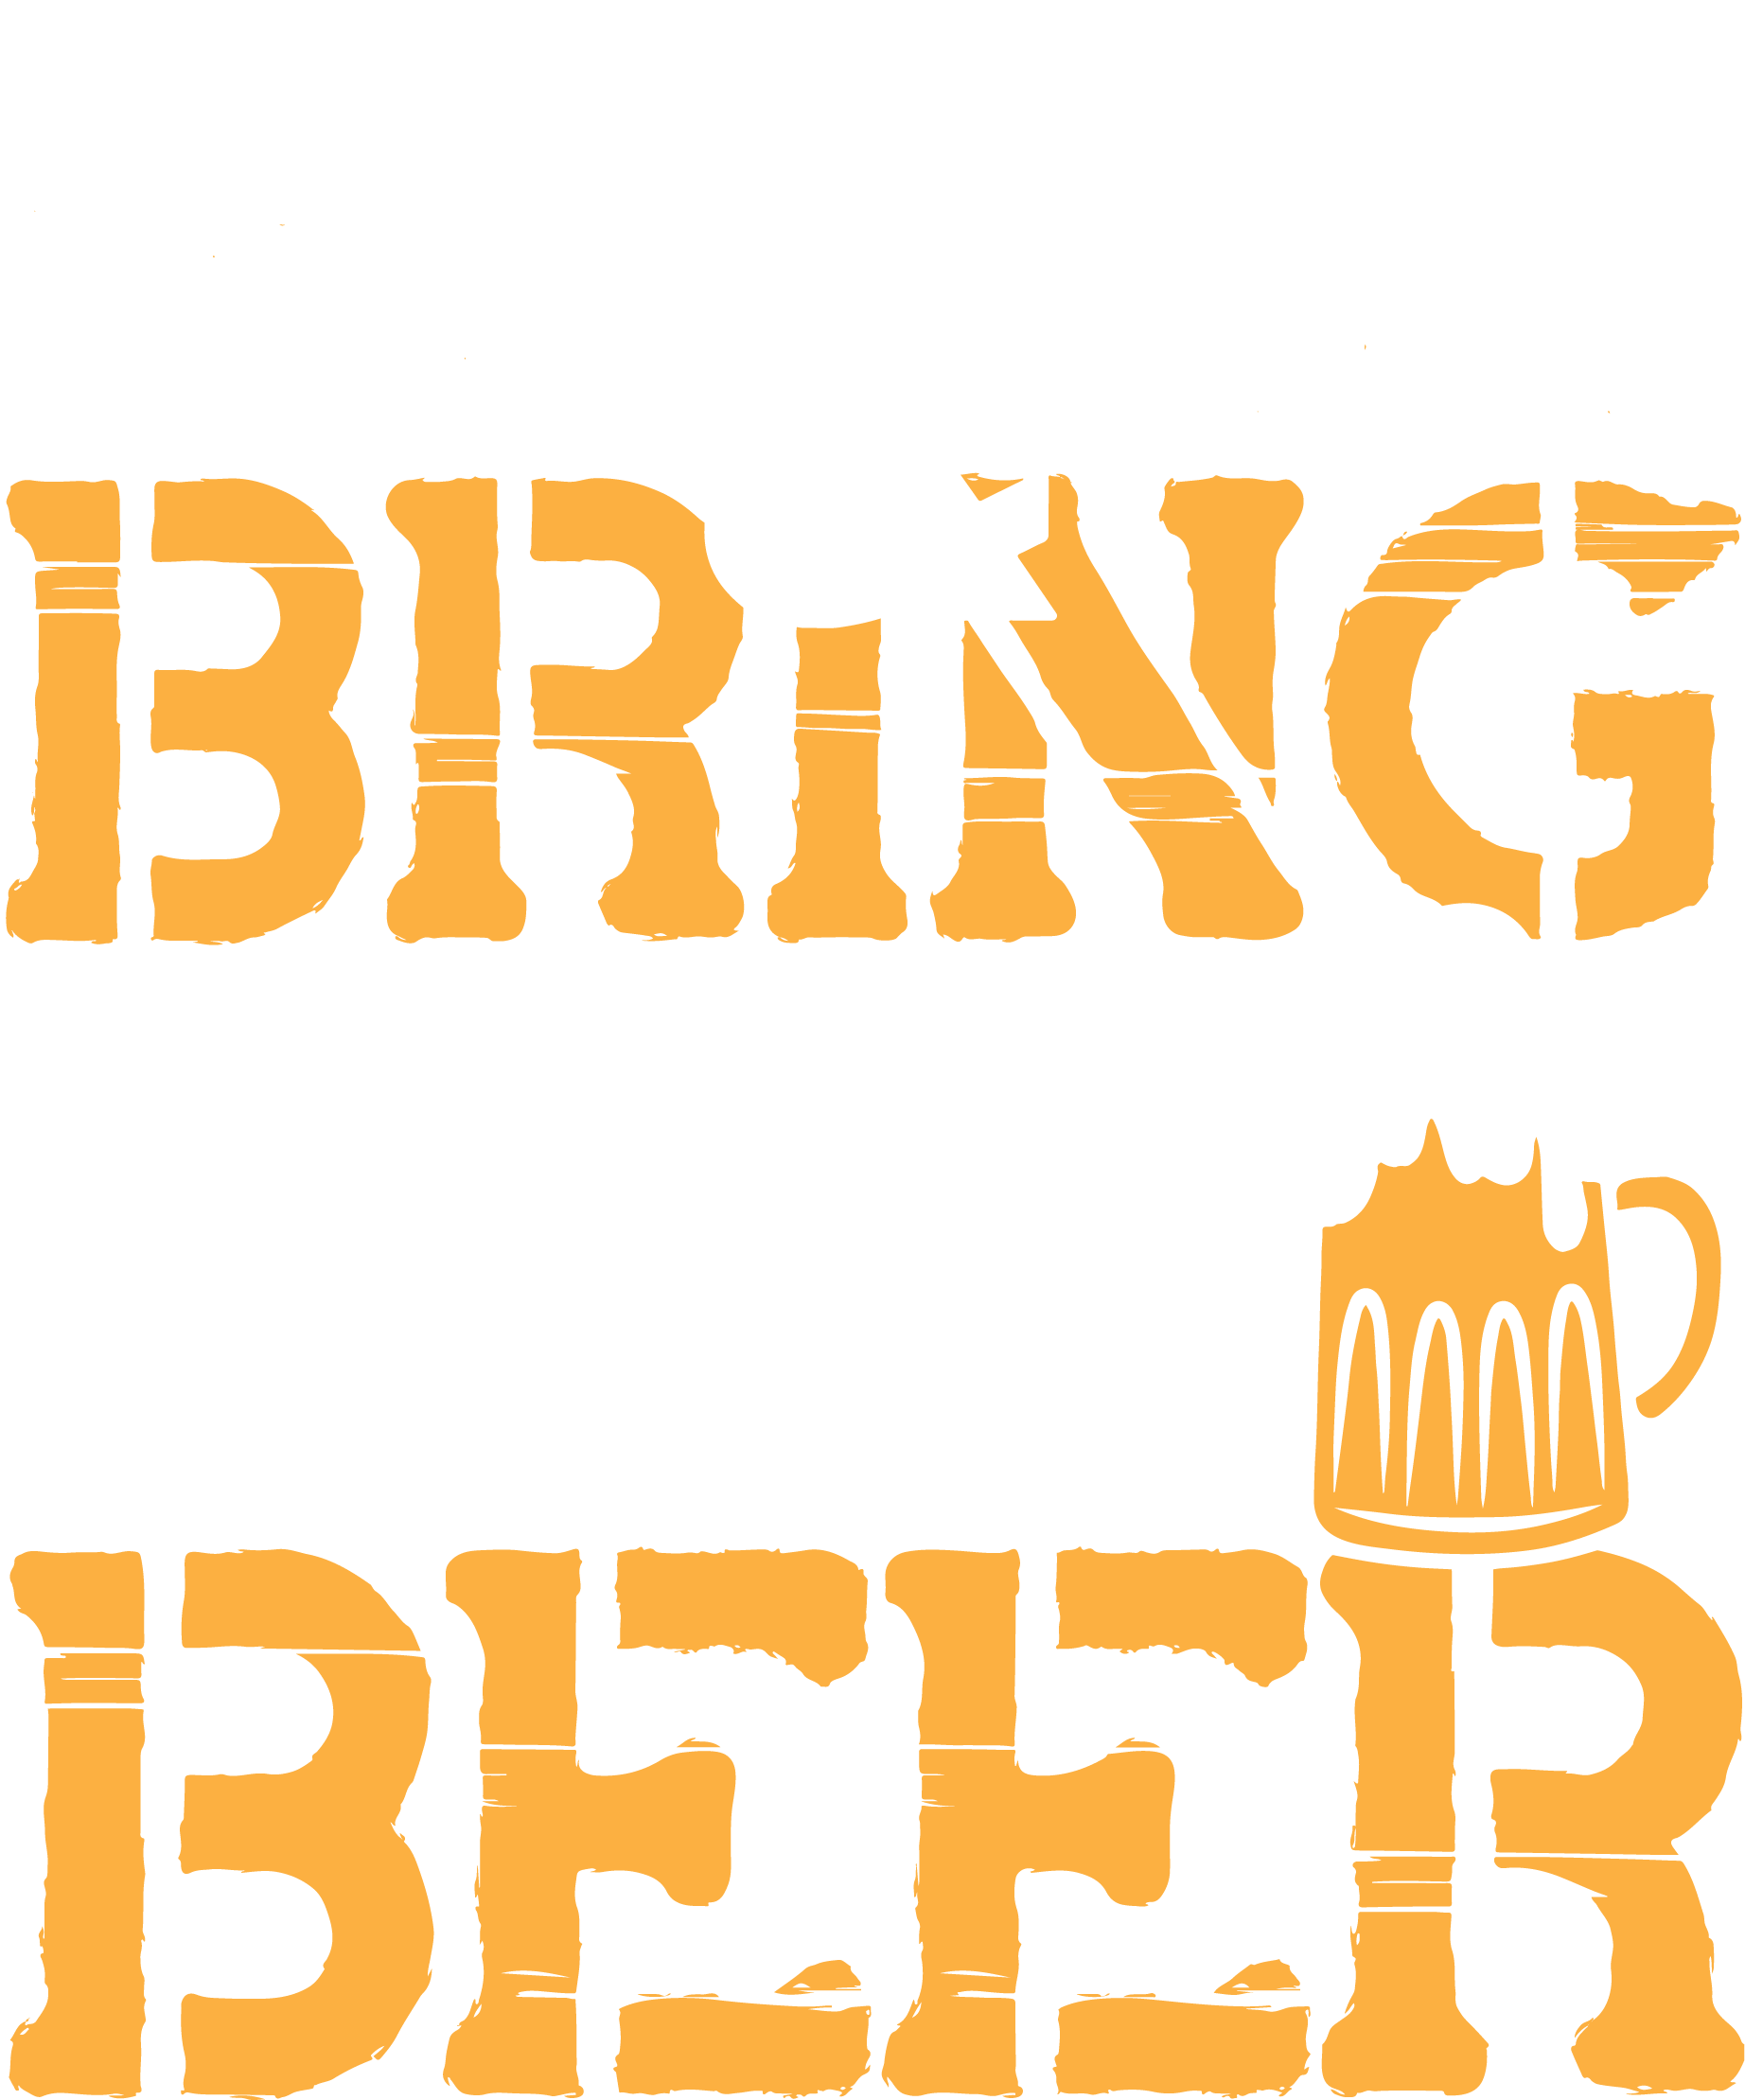 SHH, & Bring Dad Beer